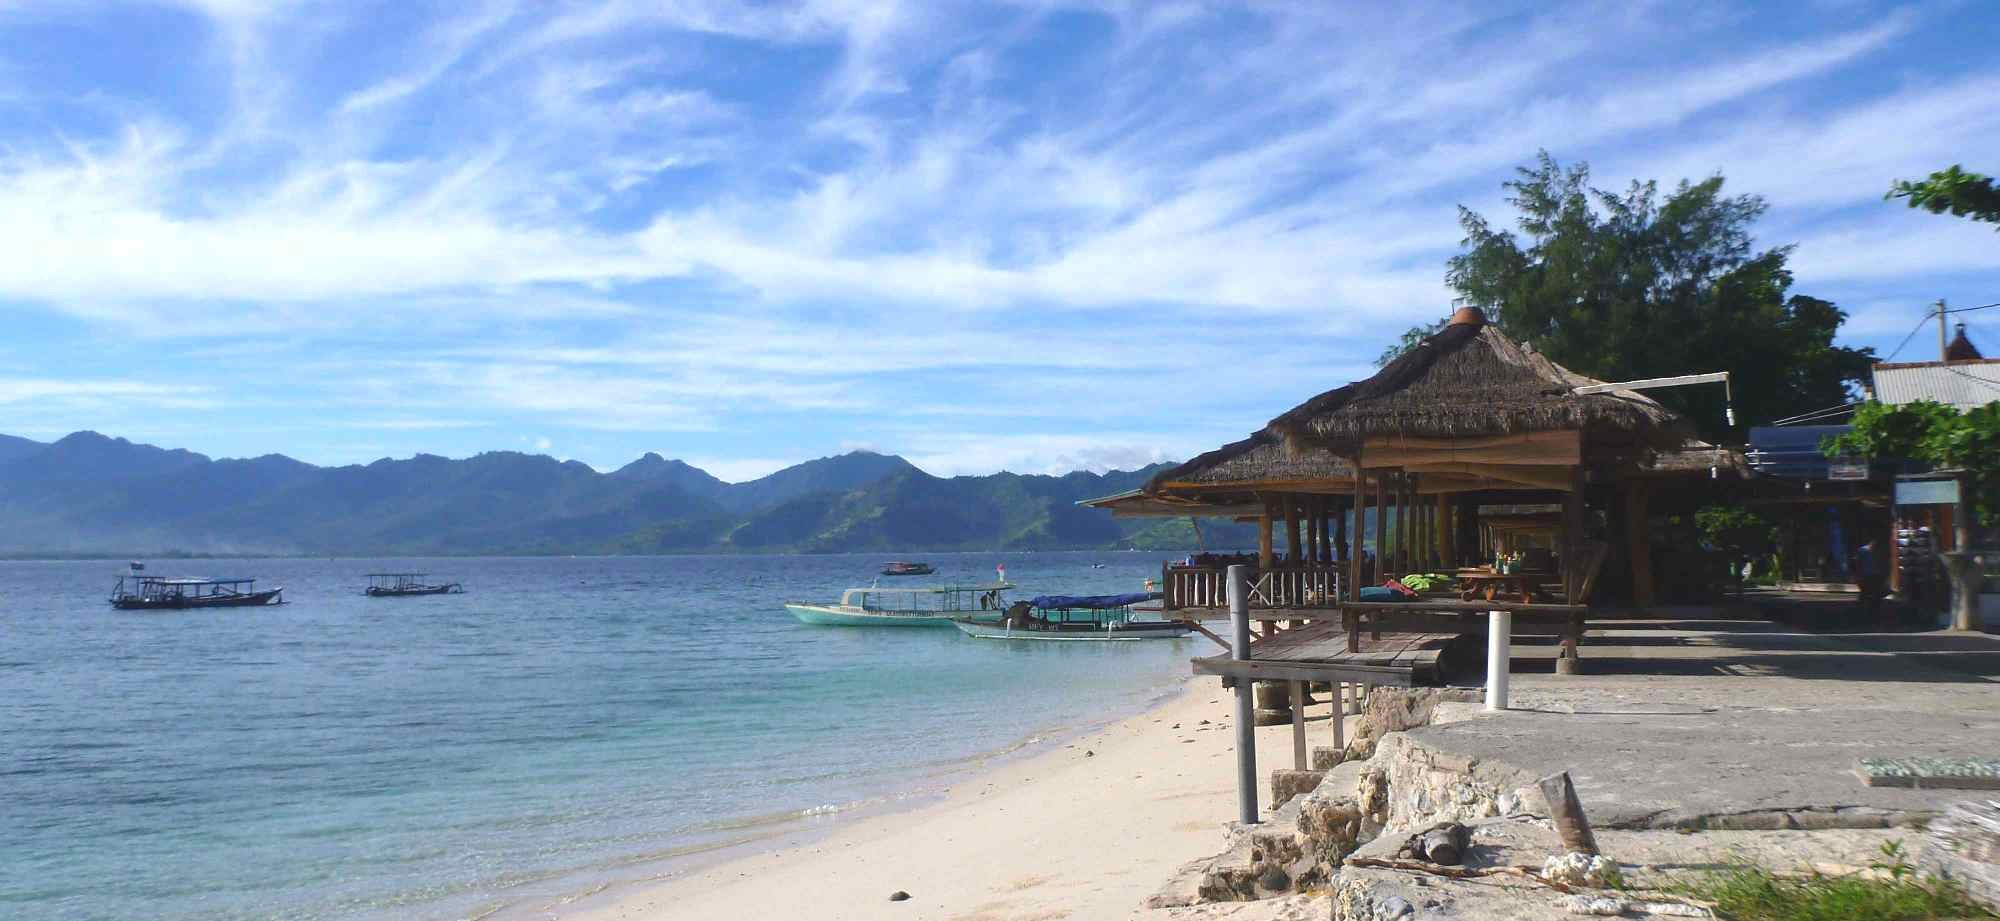 Online bestellen: Bouwsteen 4 dagen Gili Meno vanaf Bali